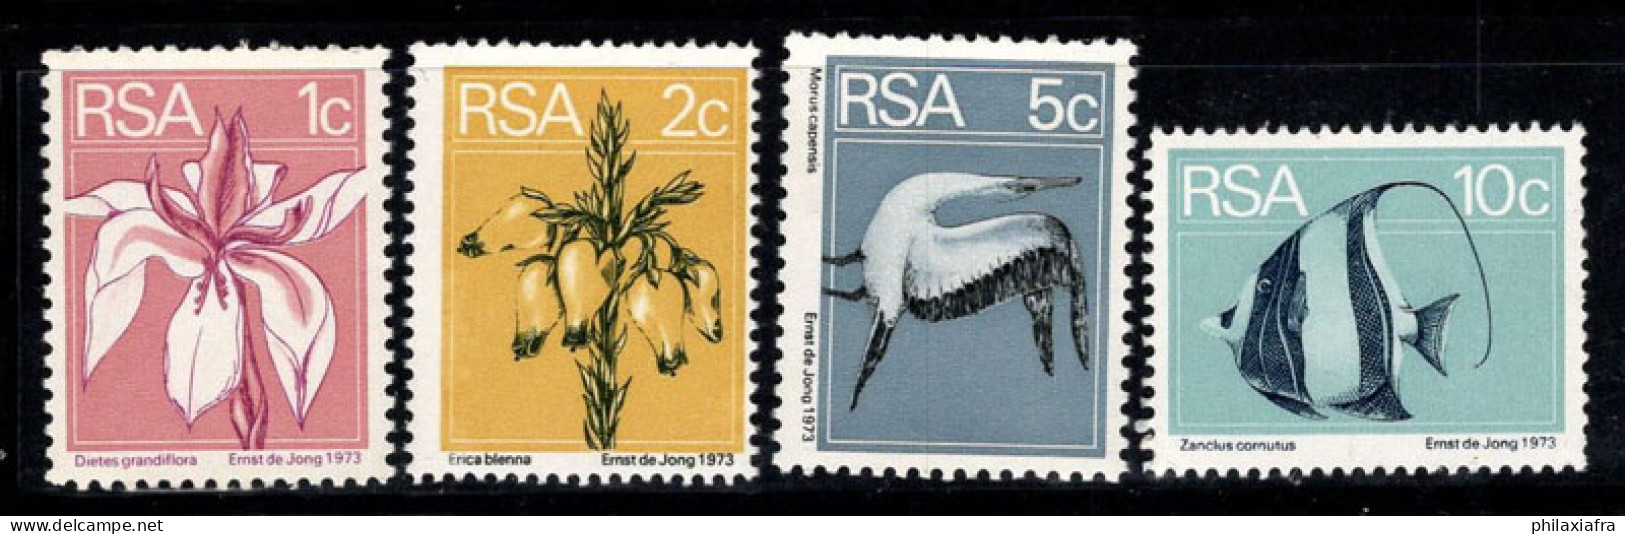 Afrique Du Sud 1974 Mi. 463A-466A Neuf ** 100% Flore Et Faune, Poissons, Fleurs - Ongebruikt